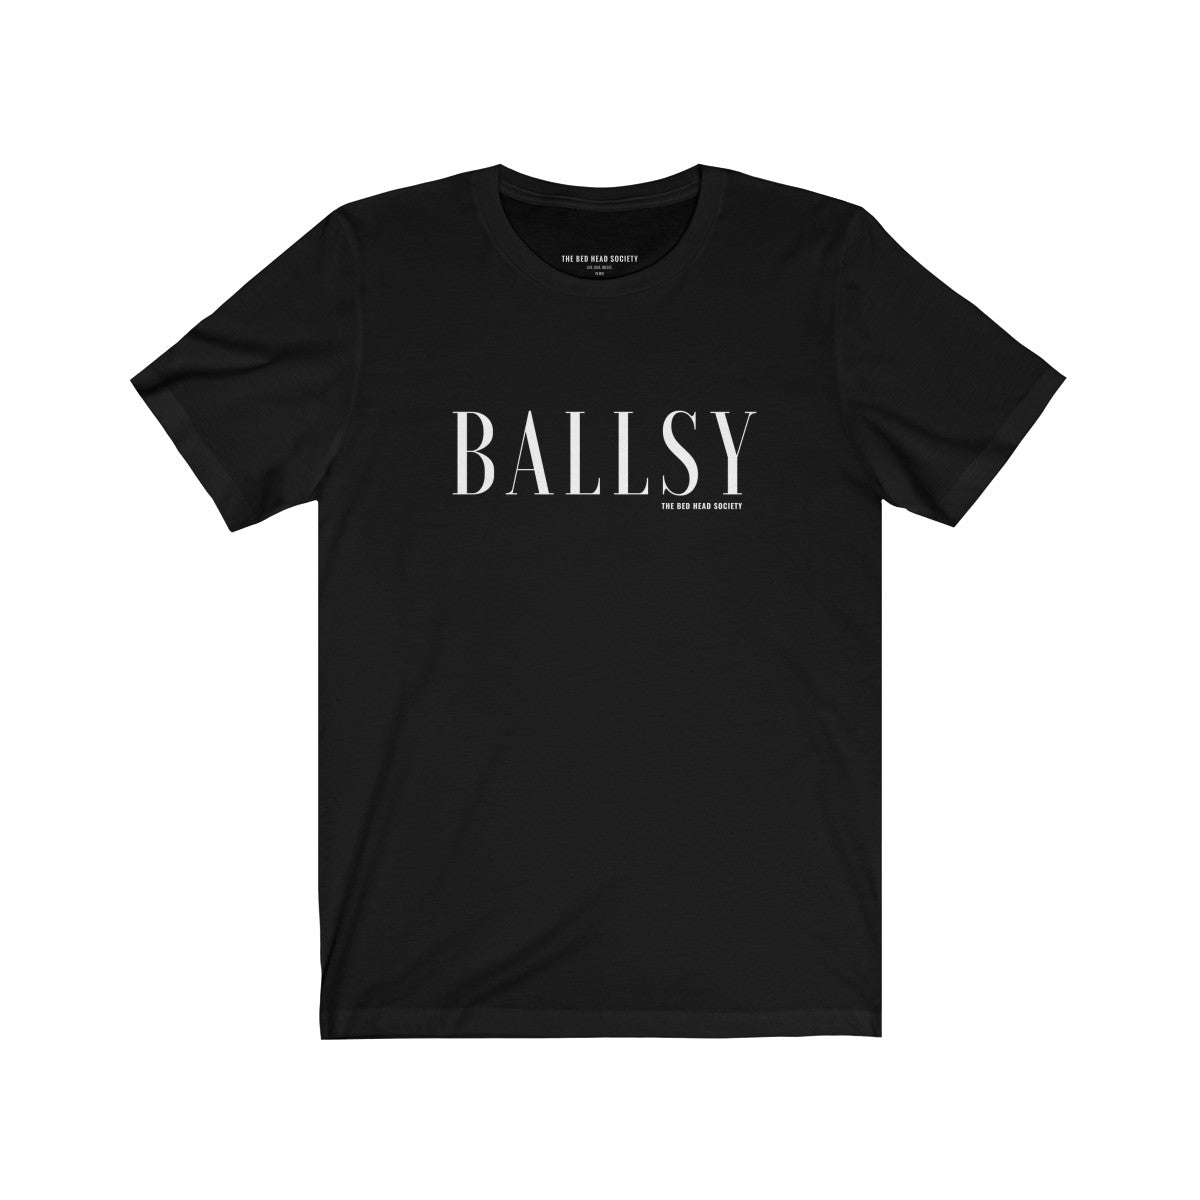 BALLSY T-Shirt - Shop Bed Head Society